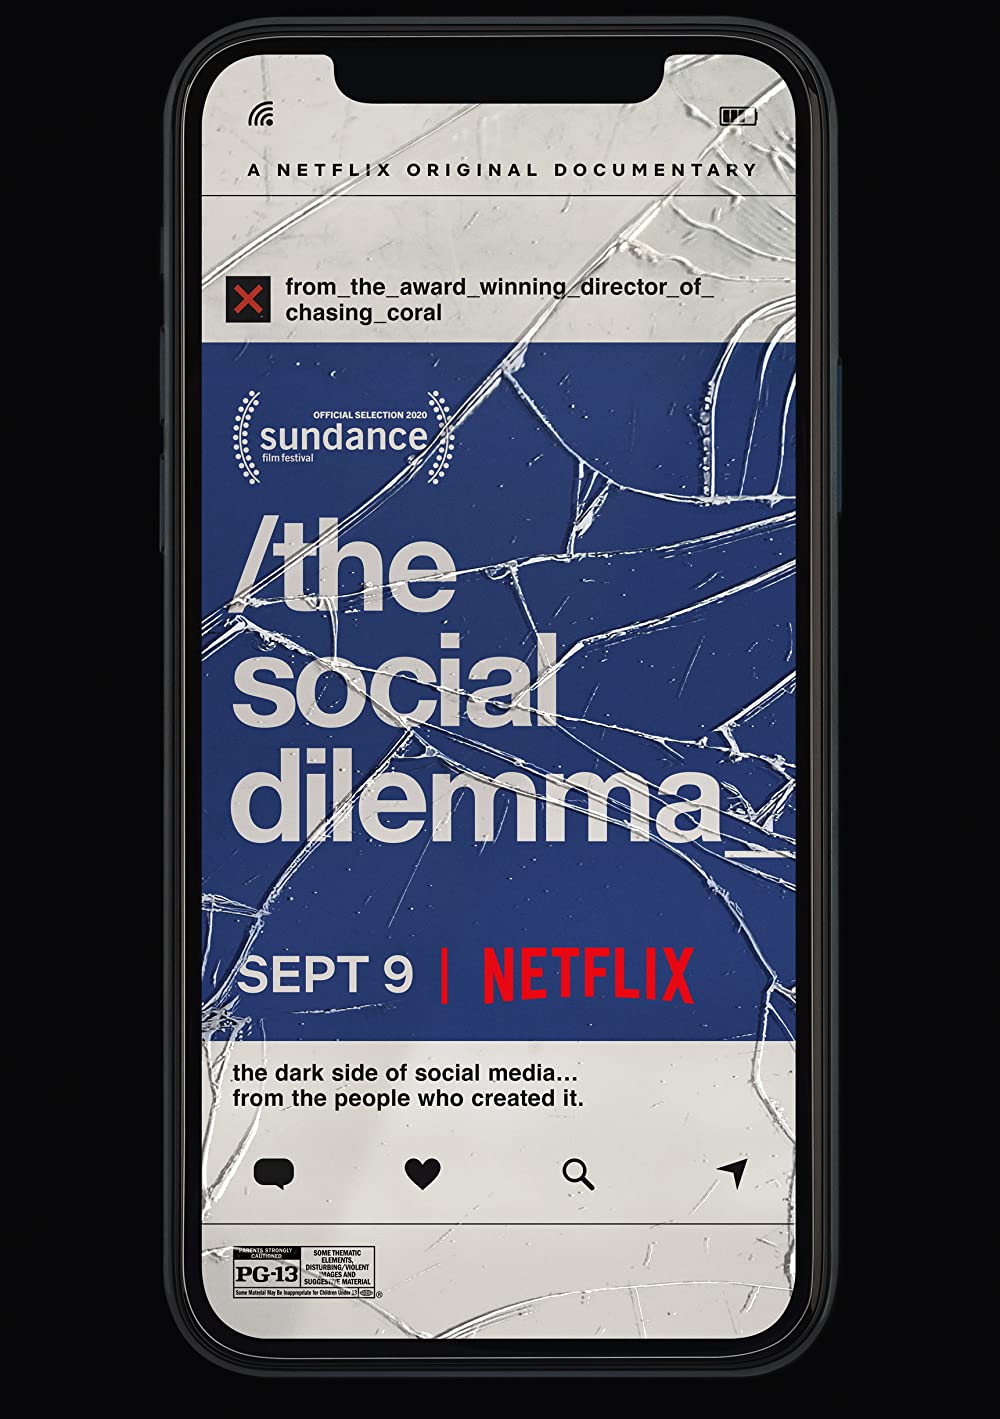 Filmbeschreibung zu The Social Dilemma